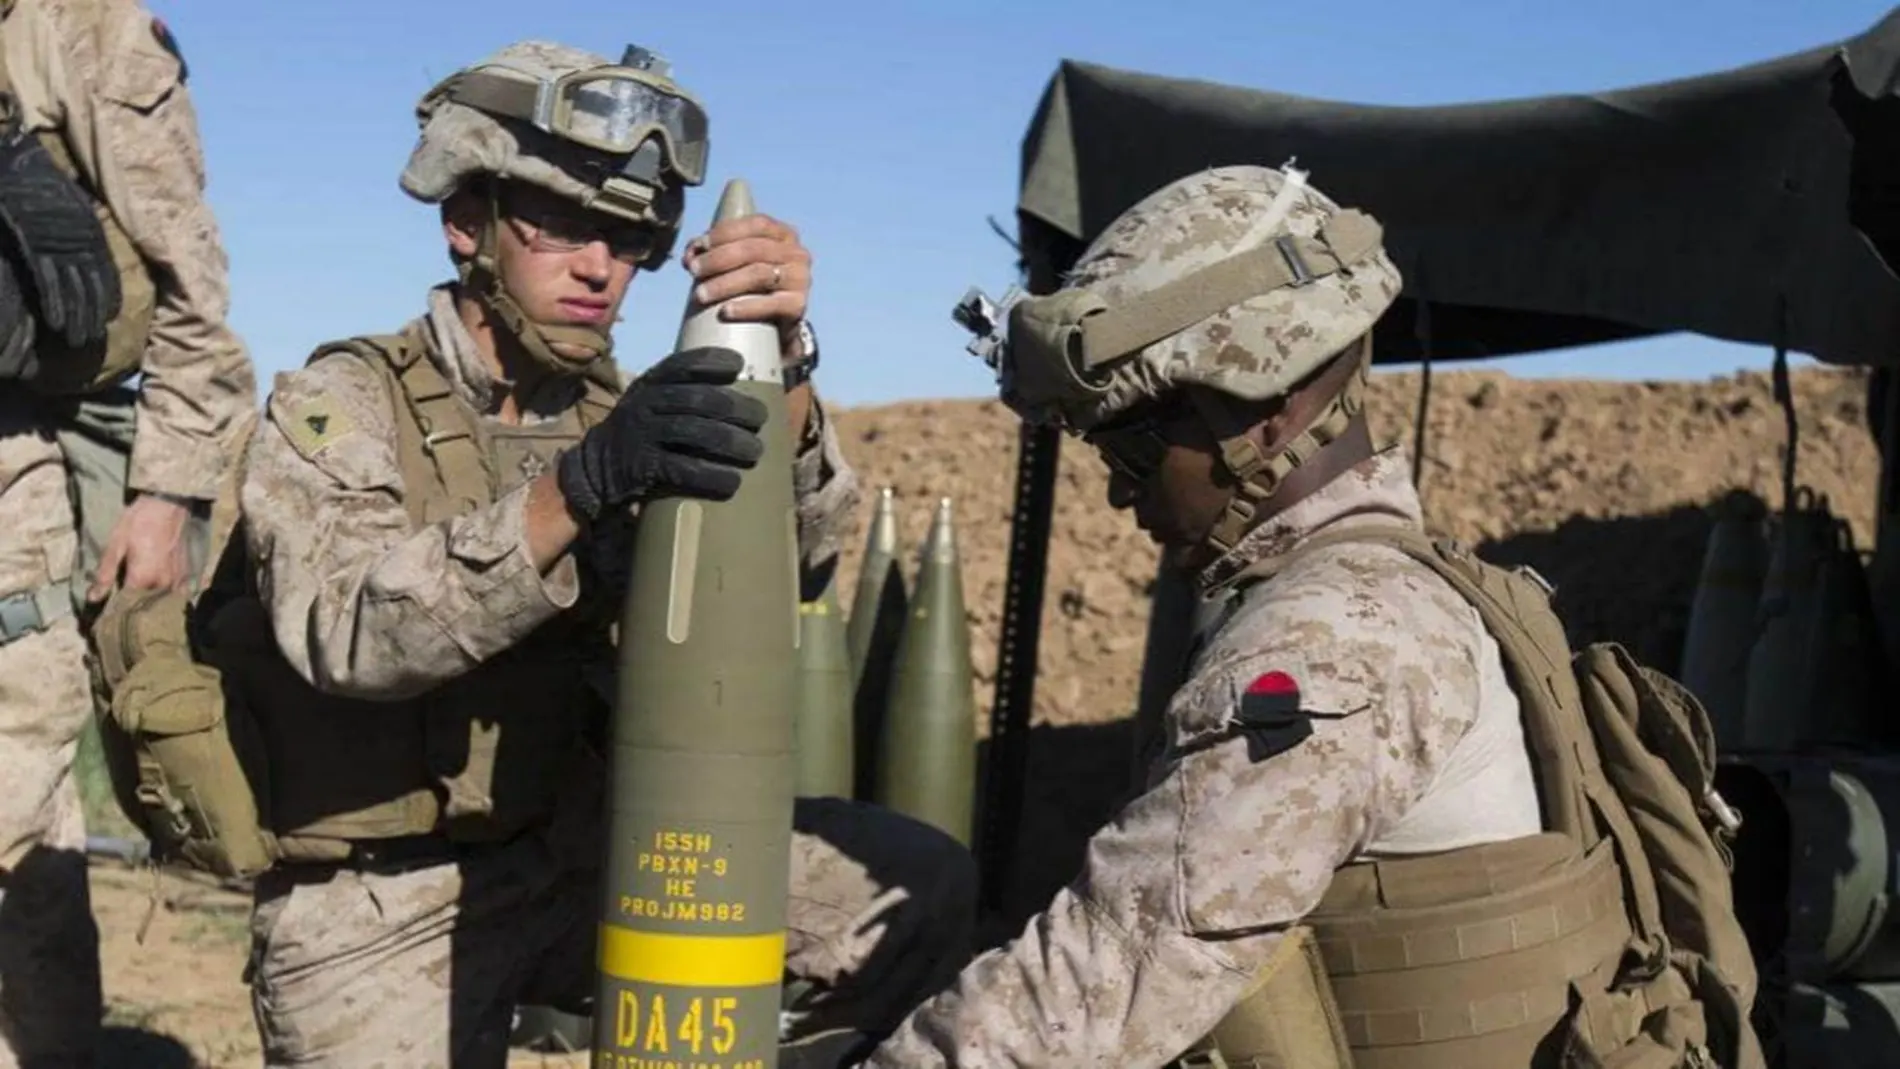 Marines de EE. UU. preparan un proyectil Excalibur de 155 mm en Irak